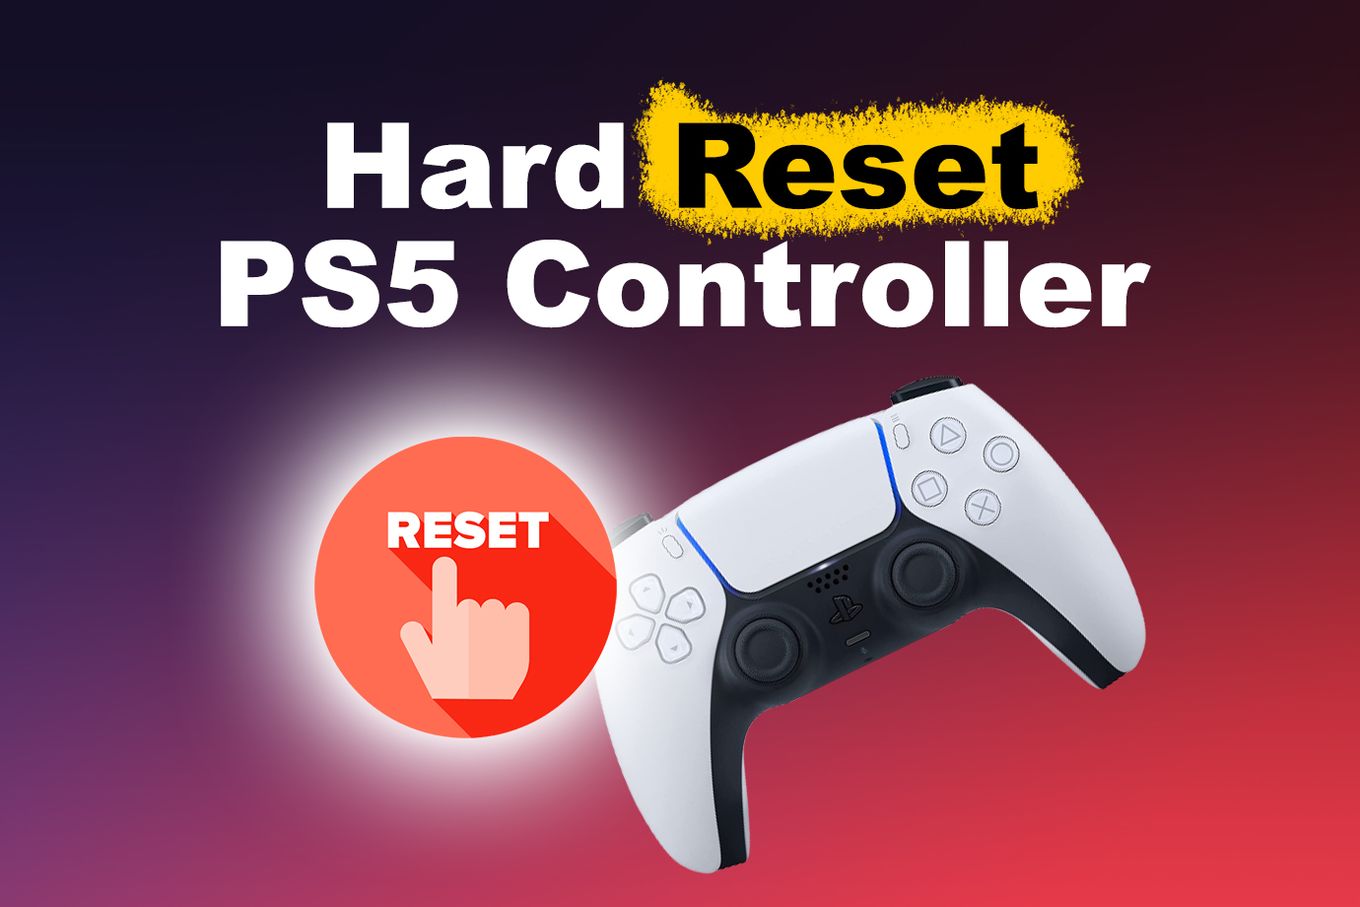 Hard Reset PS5 Controller